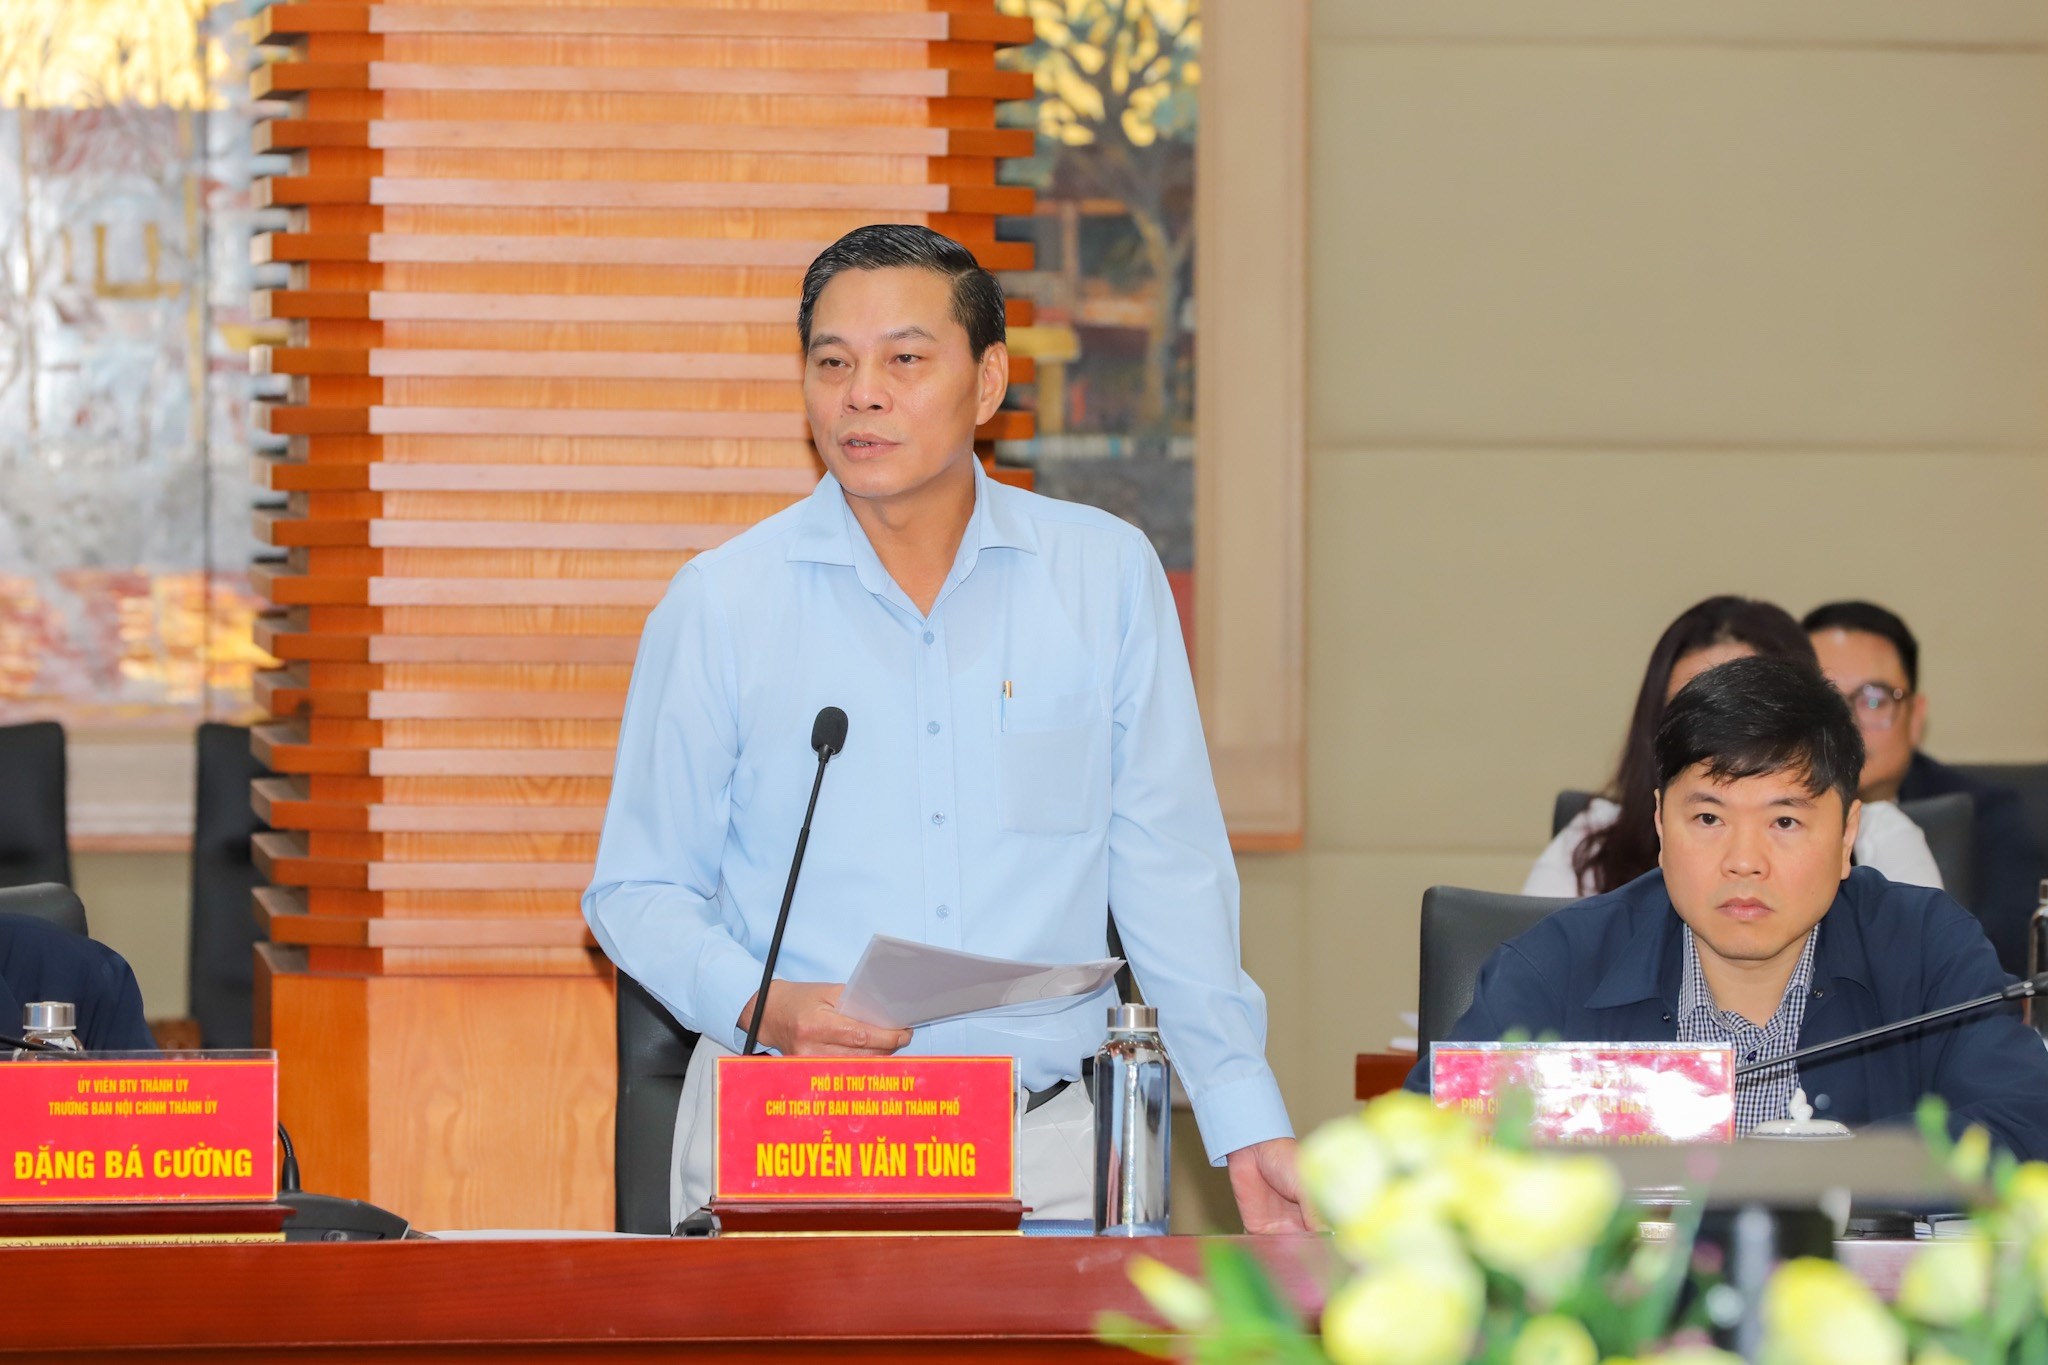 Ông Nguyễn Văn Tùng, Chủ tịch UBND thành phố Hải Phòng chỉ đạo tại cuộc làm việc